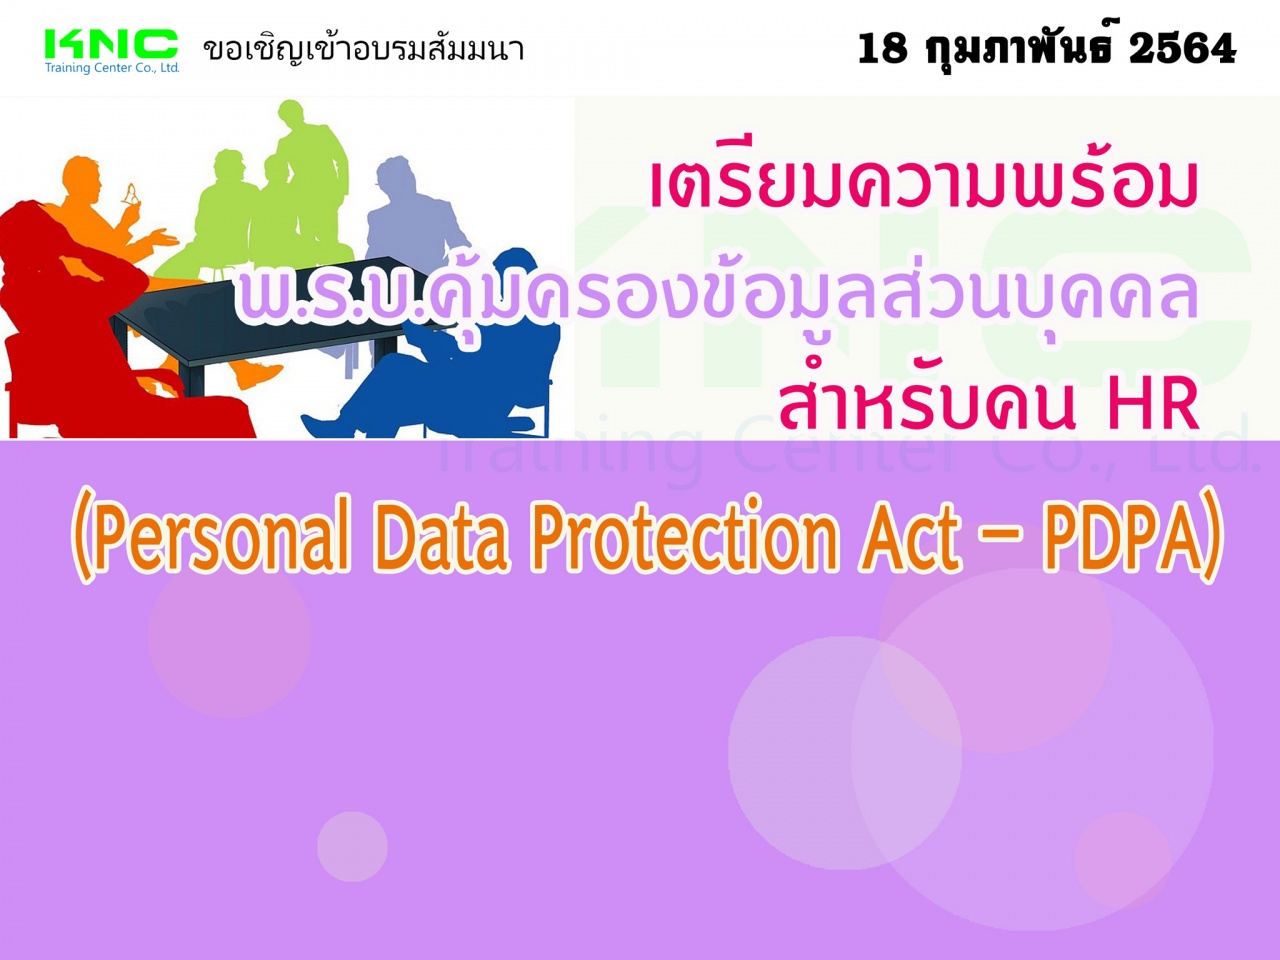 เตรียมความพร้อม พ.ร.บ.คุ้มครองข้อมูลส่วนบุคคล สำหรับคน HR (Personal Data Protection Act – PDPA)